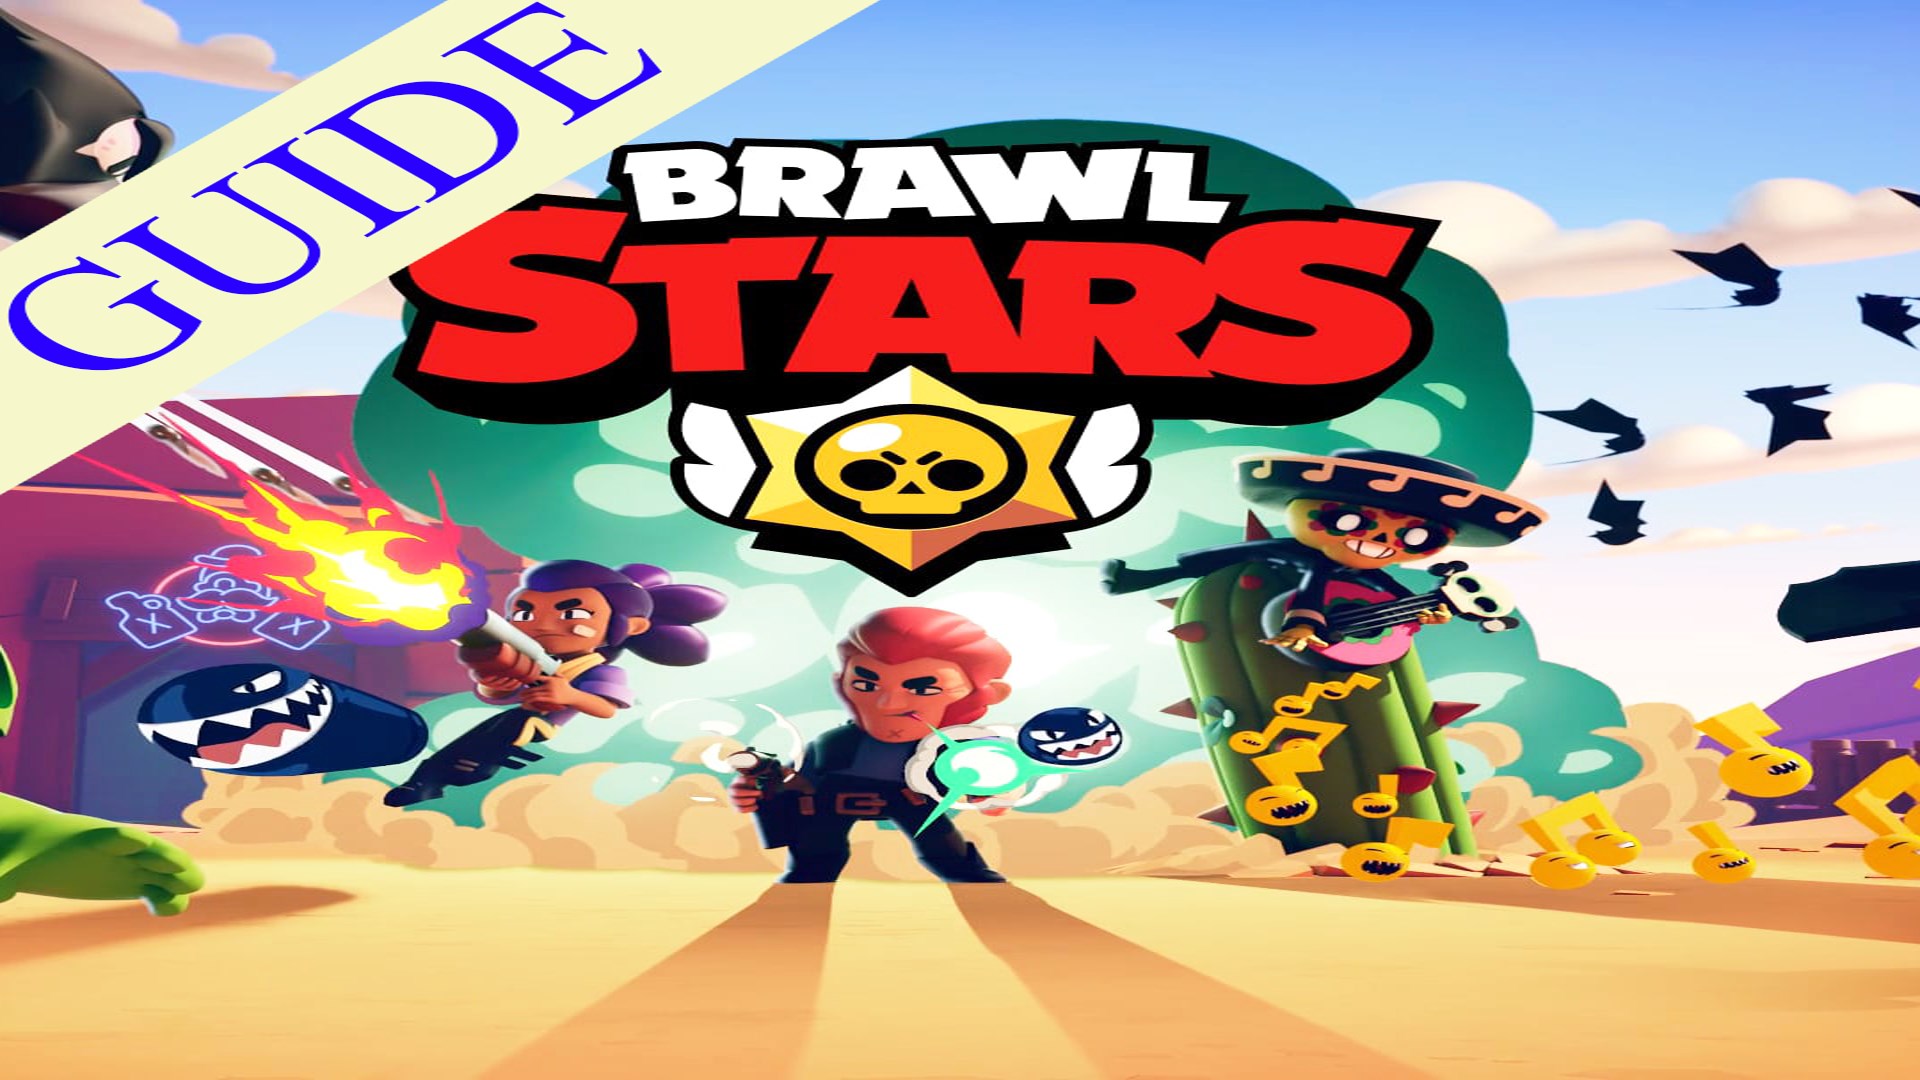 Buy Brawl Stars Avengers Guide Microsoft Store - brawl stars sofort installieren